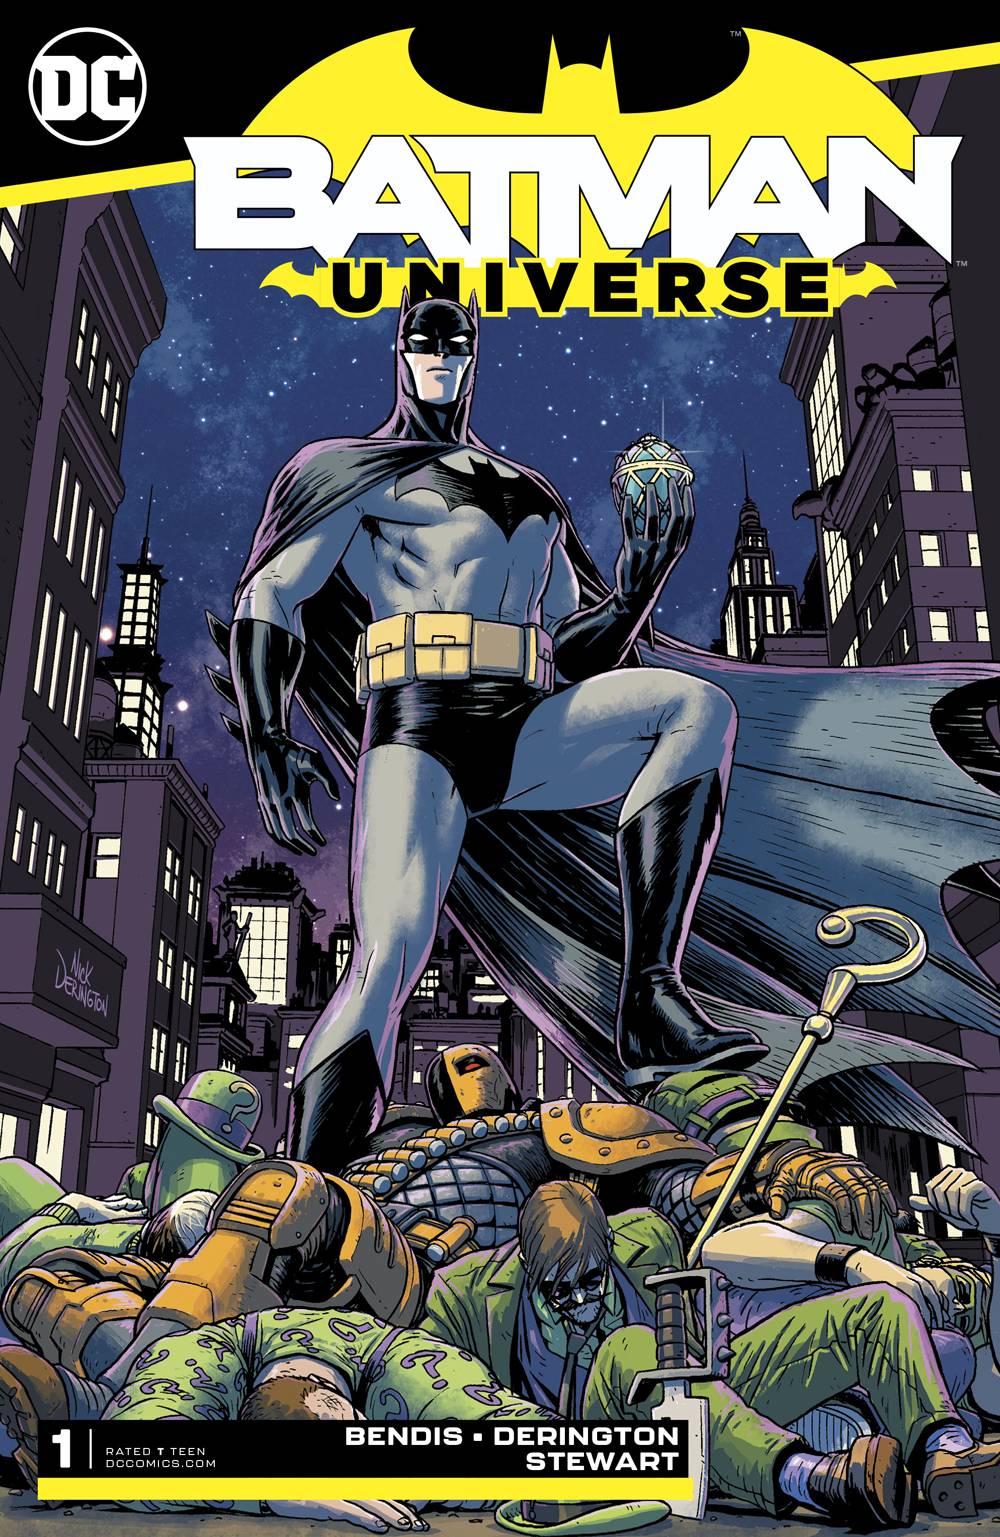 BATMAN UNIVERSE #1 (OF 6) 07/10/19 FOC 06/17/19